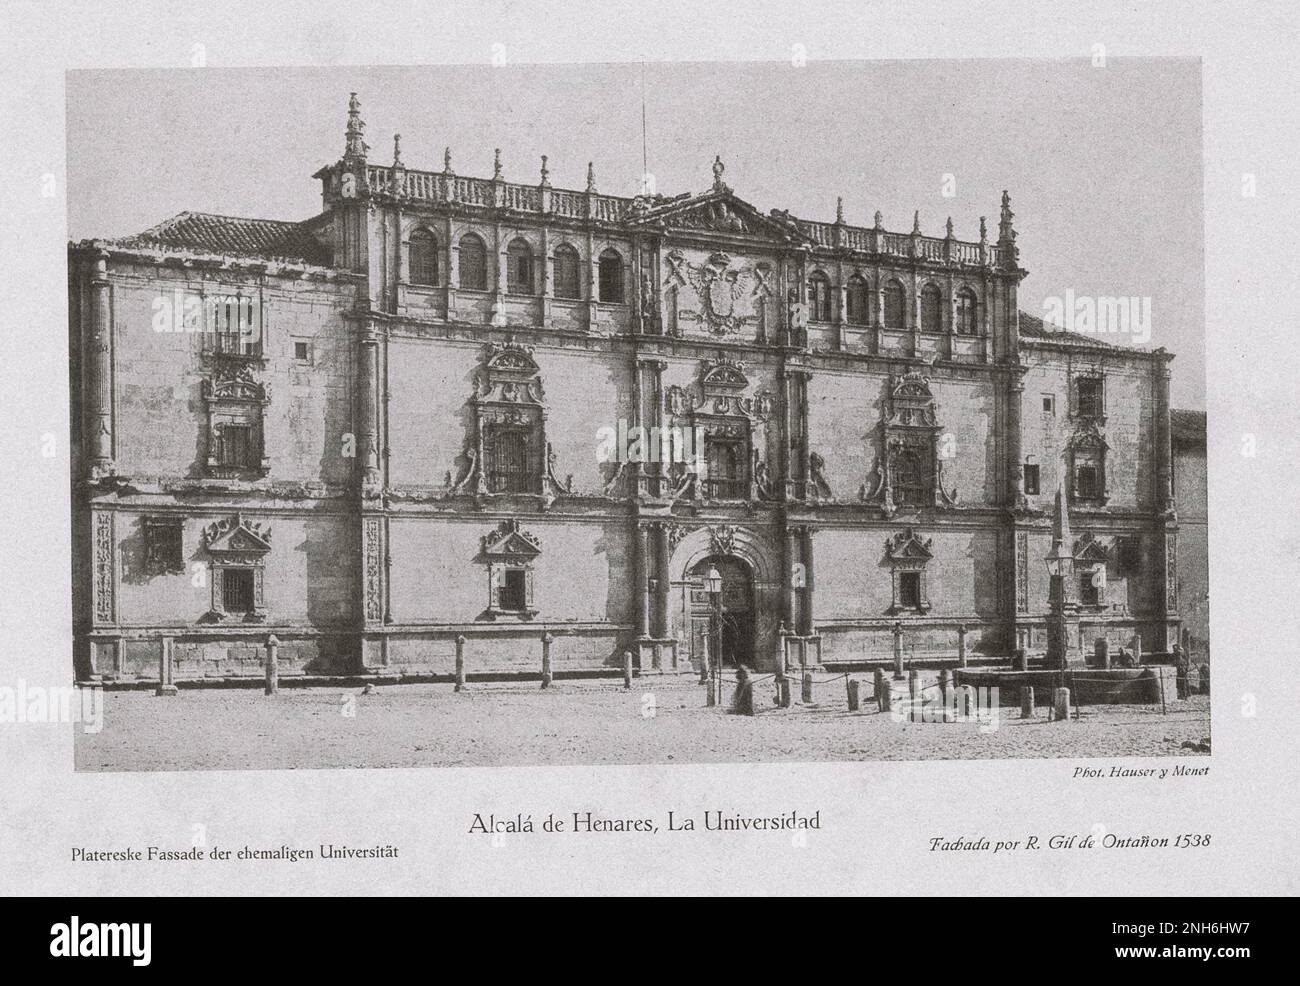 Architektur des alten Spaniens. Vintage-Foto der Universität von Alcalá (Alcala de Henares, La Universidad). Platereske Fassade der ehemaligen Universität Stockfoto